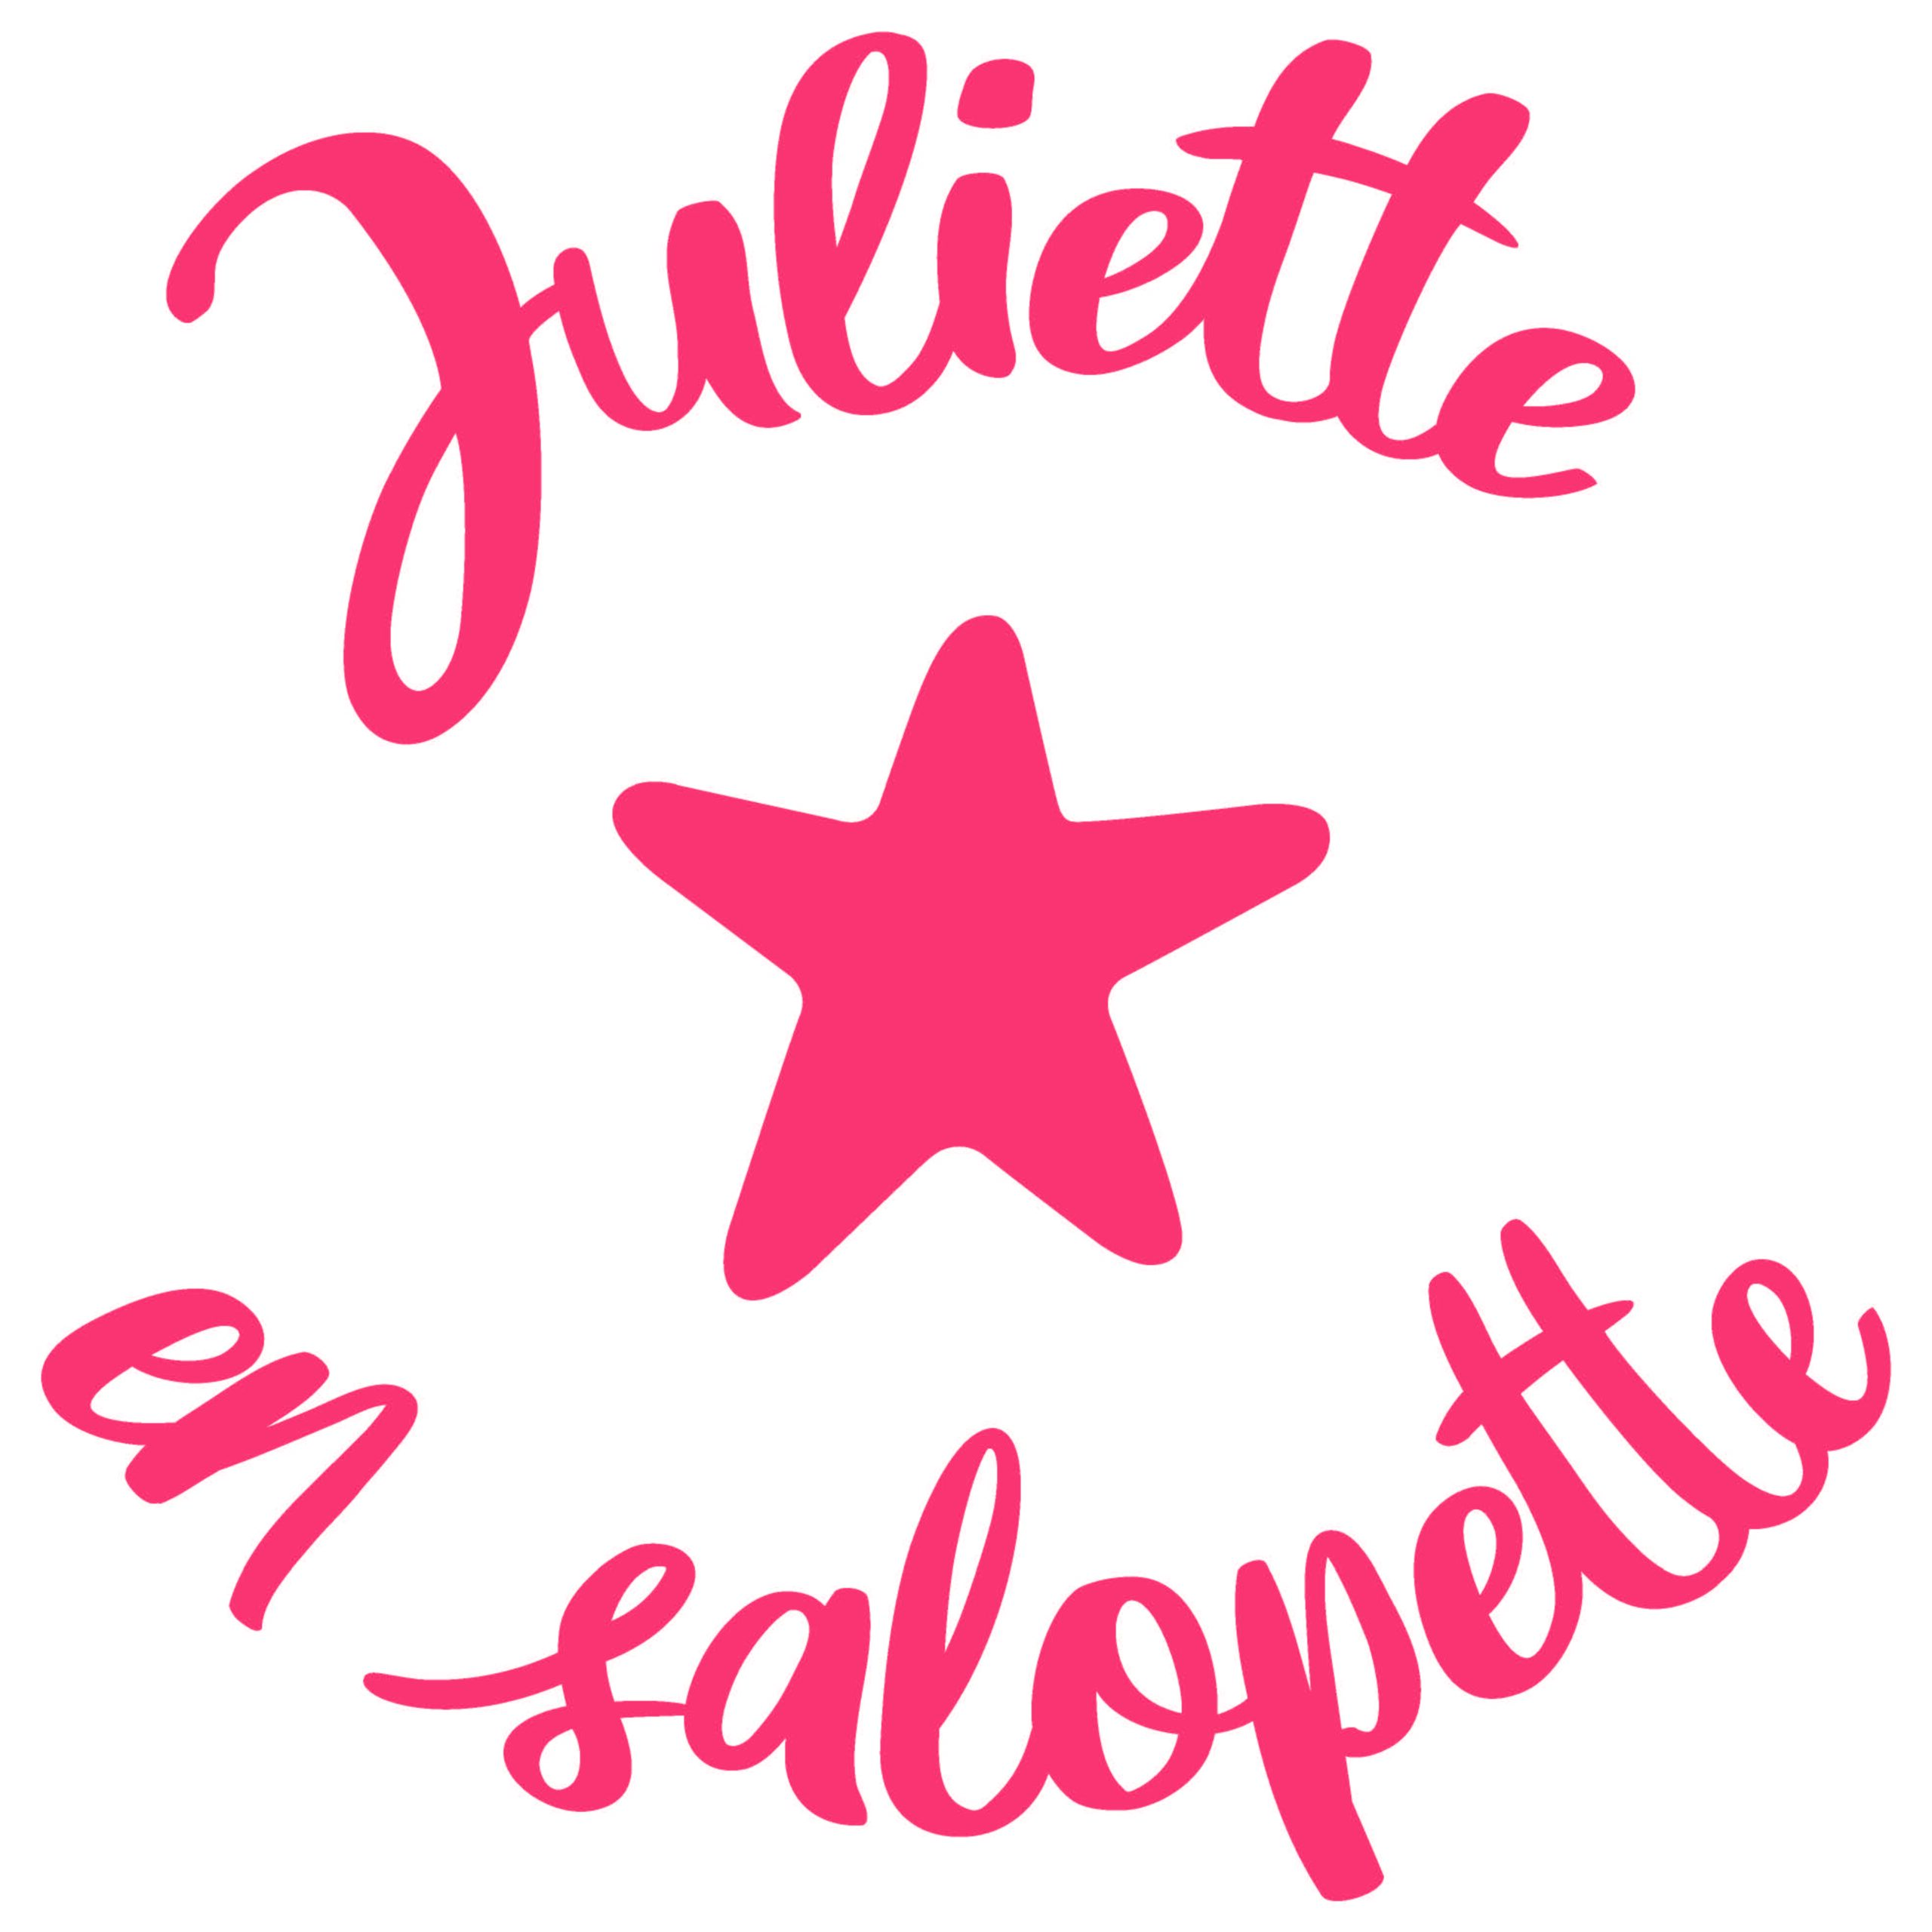 Juliette-en-salopette-abc-kidz-bordeaux-scaled.jpg